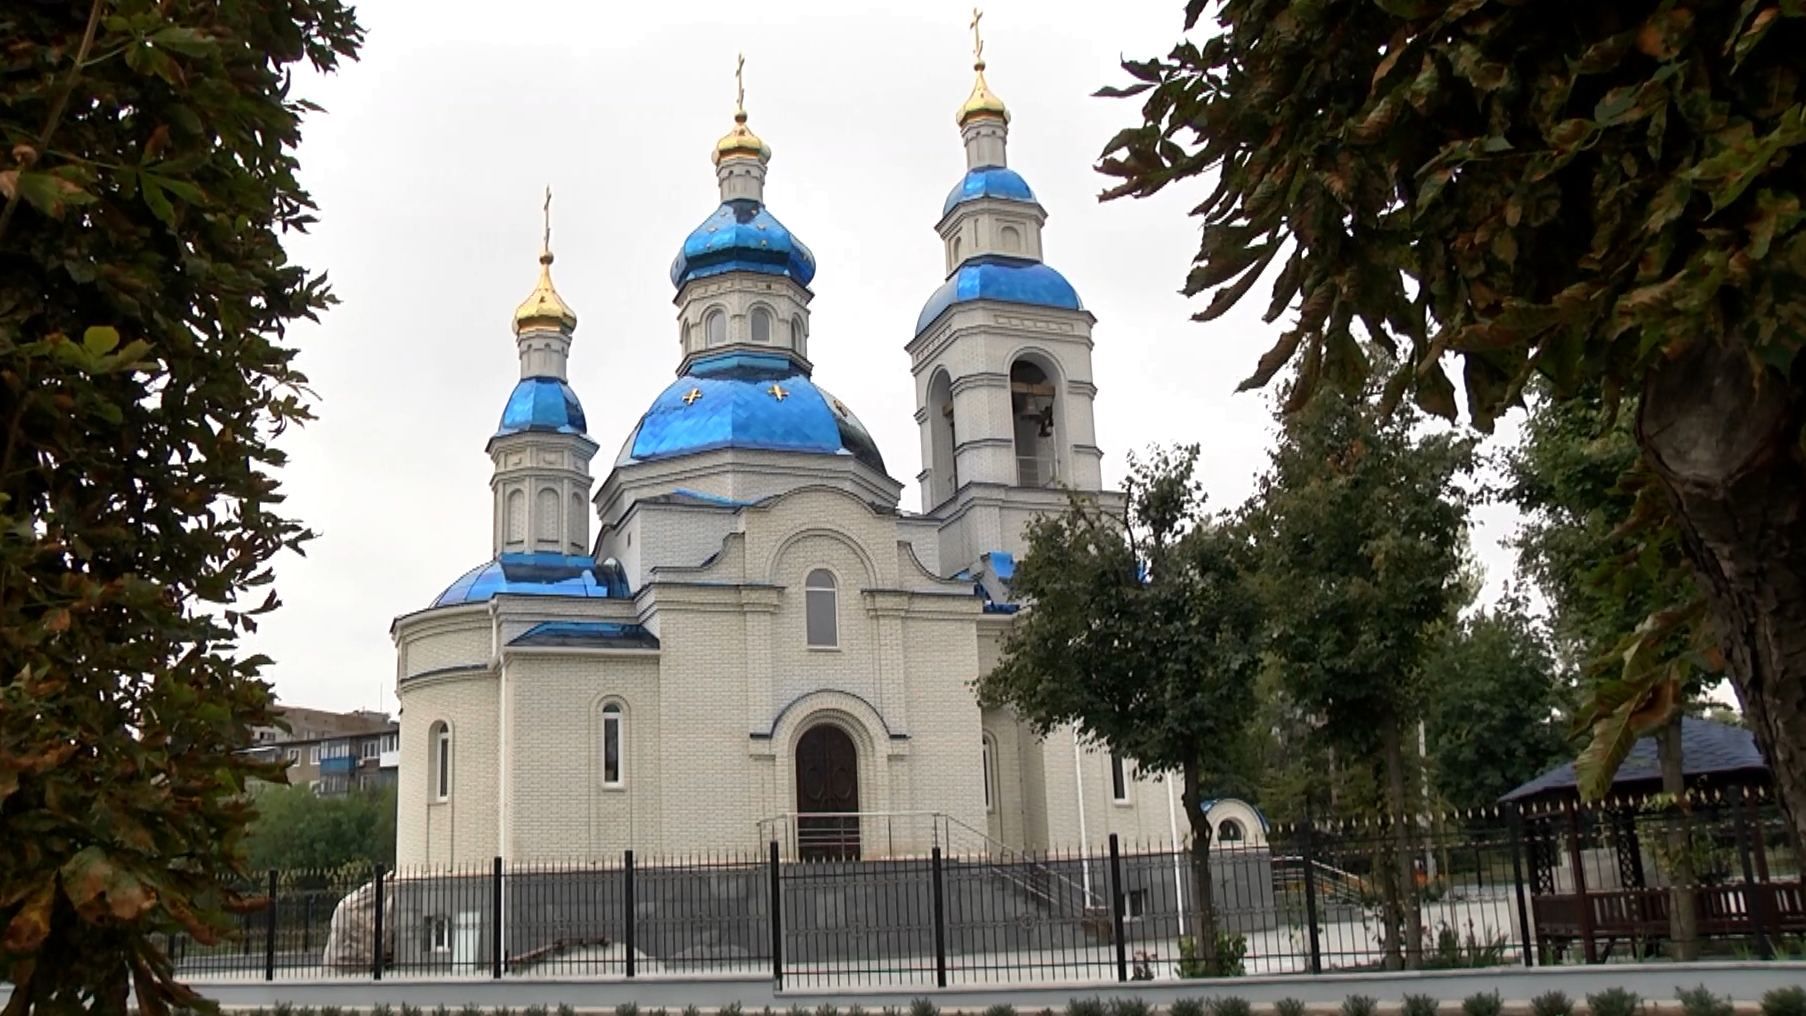 Посягаються на святе: як Московський патріархат перетягує на свій бік українську церкву